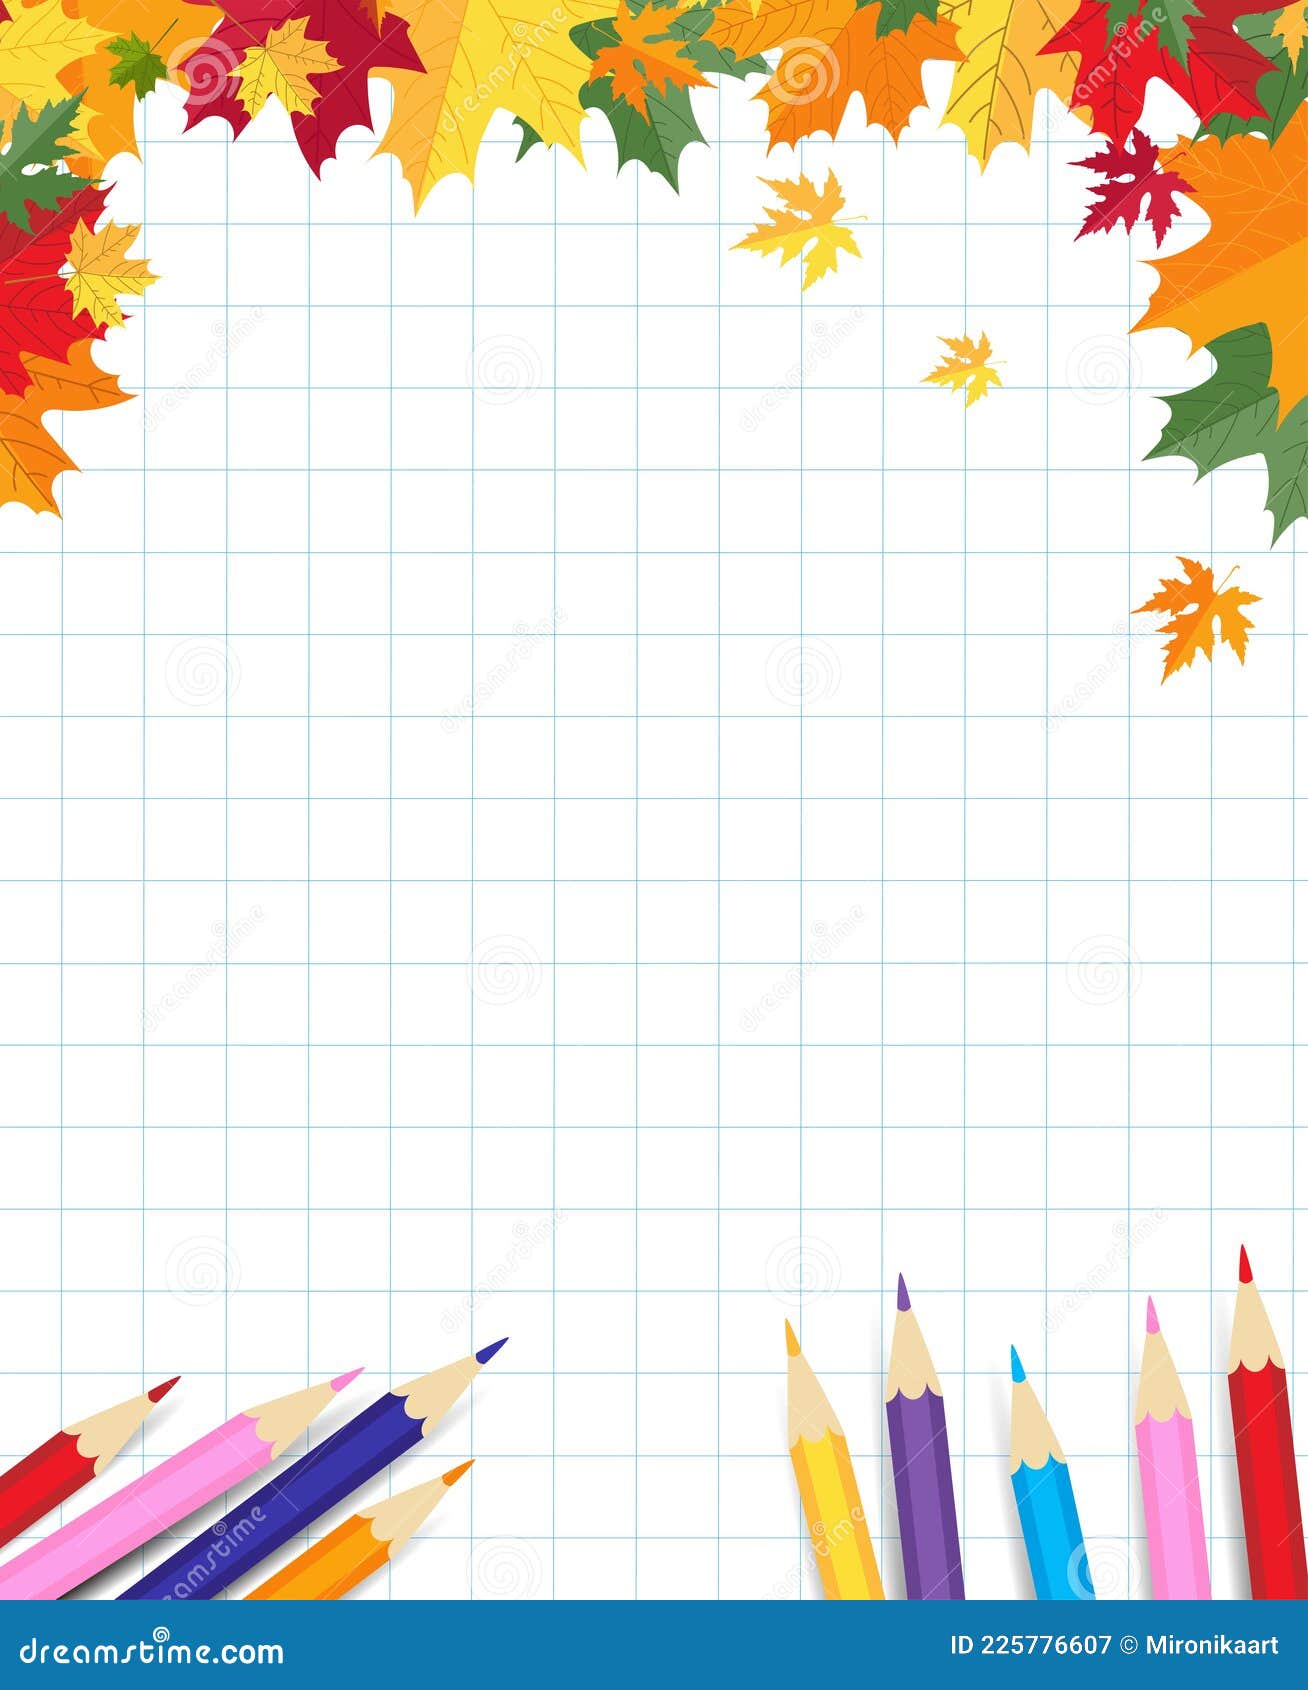 Hình nền sổ tay quay trở lại trường học với lá phong đầy màu sắc sẽ mang lại cho bạn cảm giác vui tươi và hứng khởi trong suốt quá trình học tập. Với sự kết hợp của các hoạ tiết và màu sắc trong đường nét, bạn sẽ được tạo nên một sổ tay độc đáo và đẹp mắt.